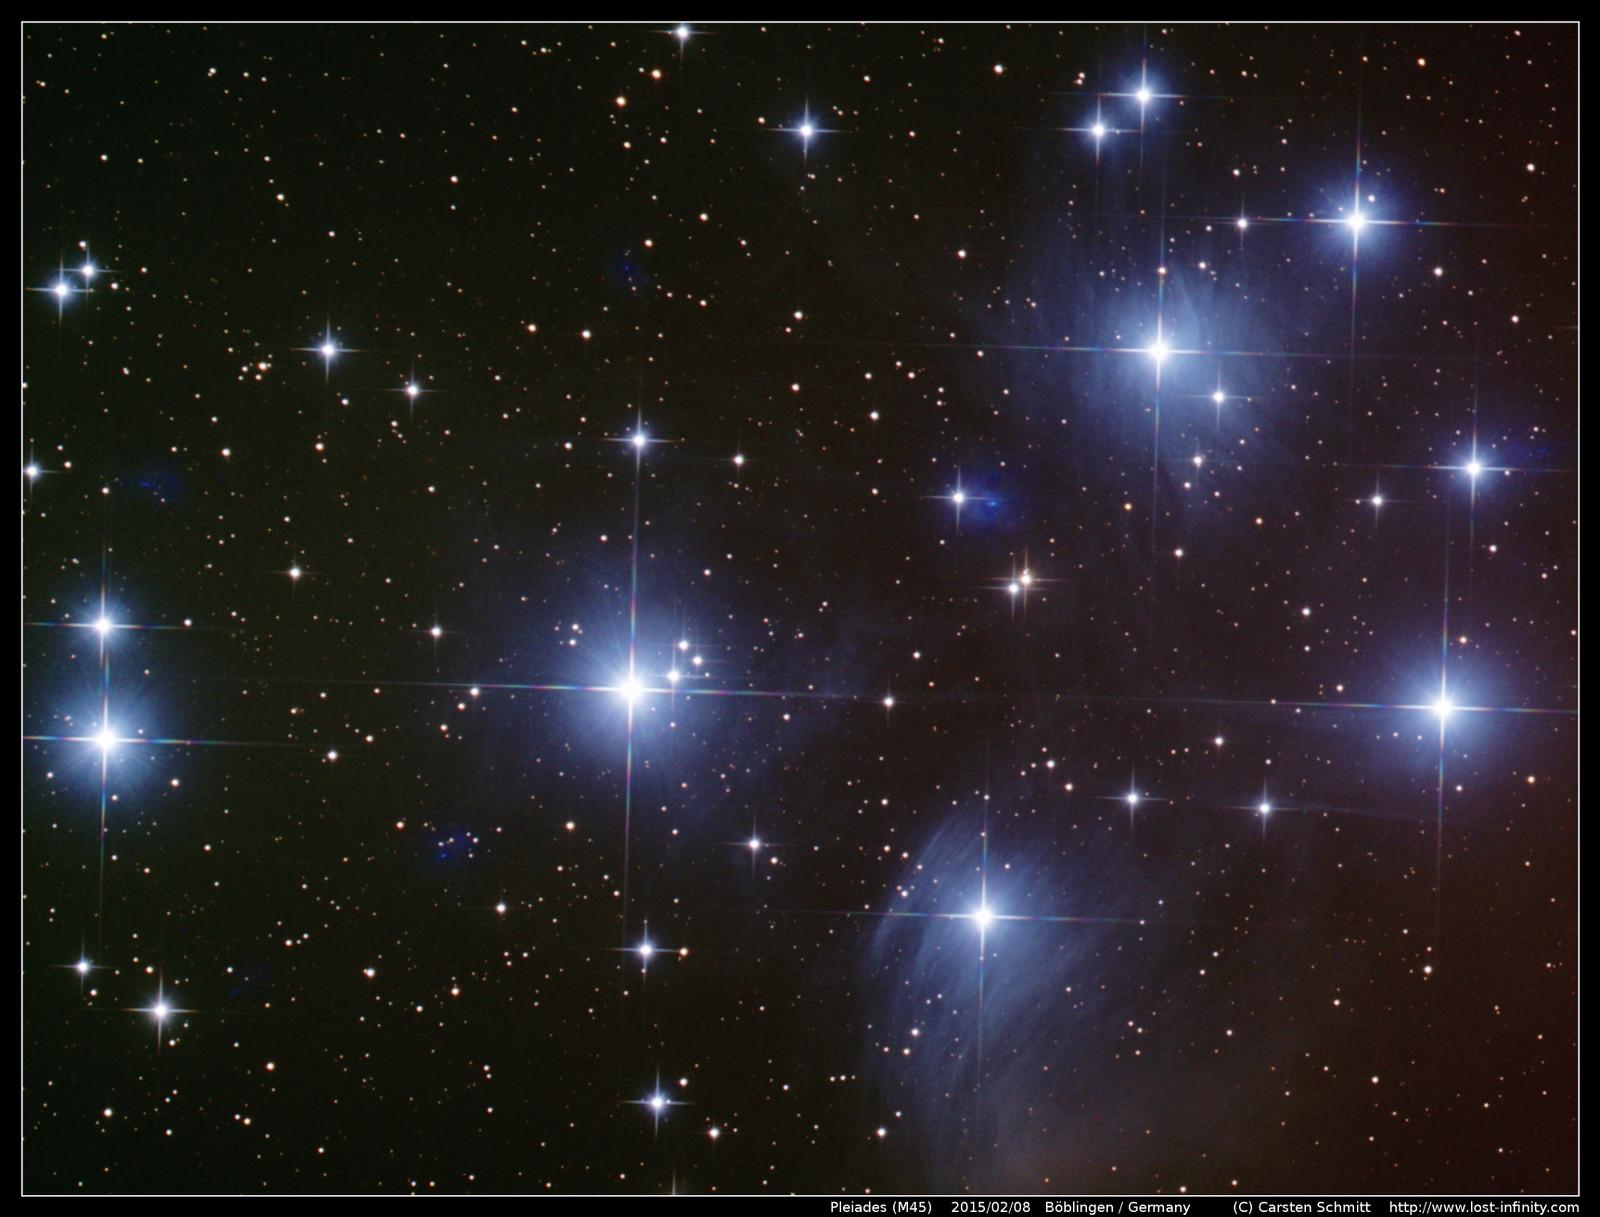 Pleiades (M45) - 2015/02/08